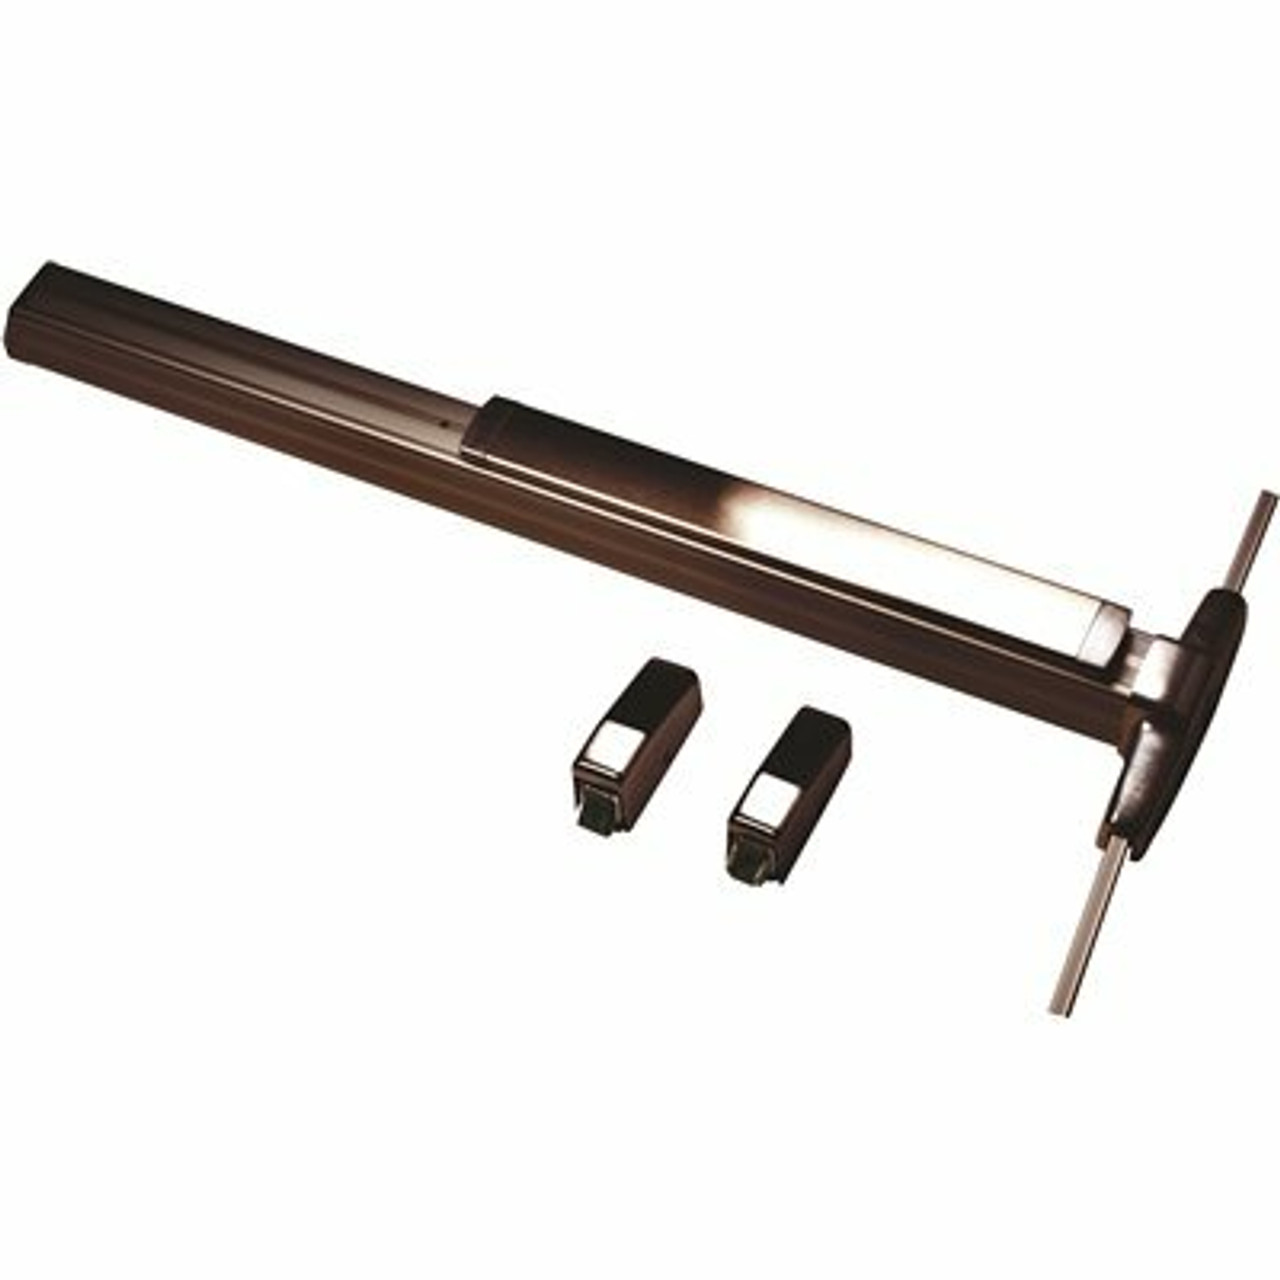 Von Duprin Grade-1 Dark Bronze Surface Vertical Rod Exit Device, Non-Handed, Exit Only - 310013193